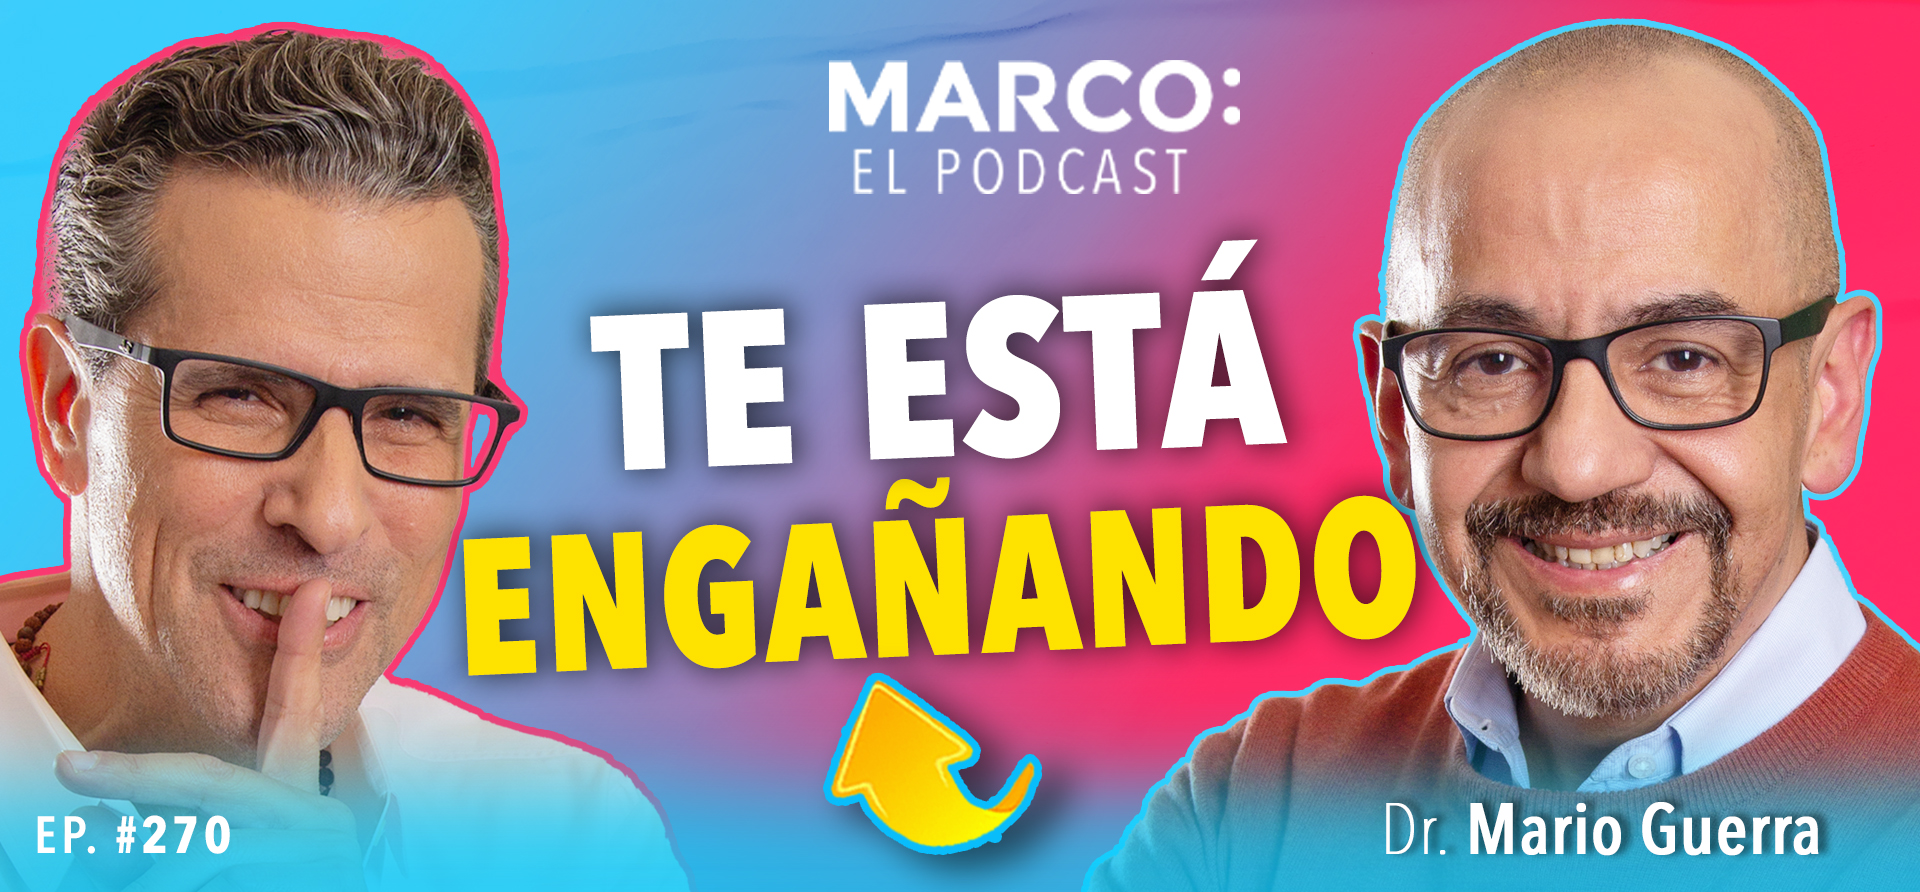 Infidelidad en Marco El Podcast con Mario Guerra